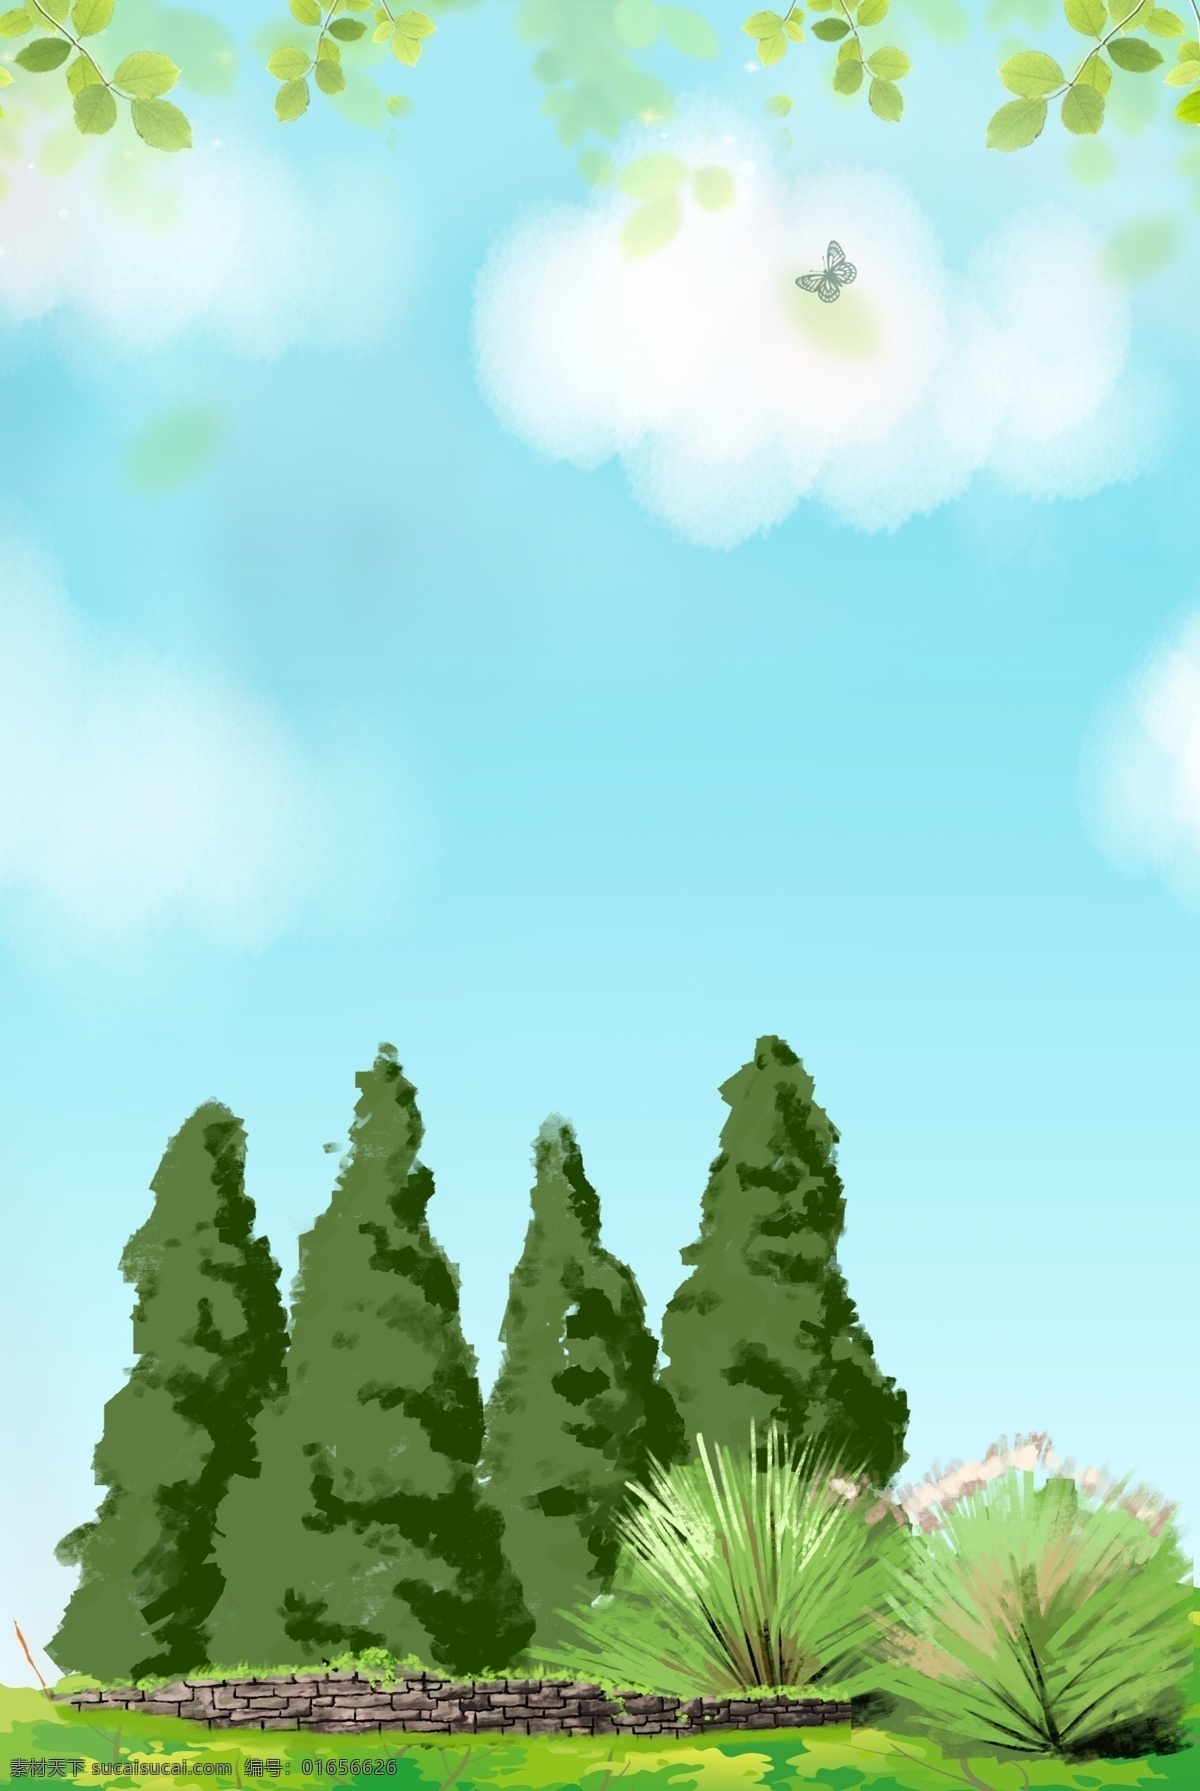 卡通 自然风景 春季 简约 合成 背景 风景 绿色 绿植 树木 出游 手绘 创意